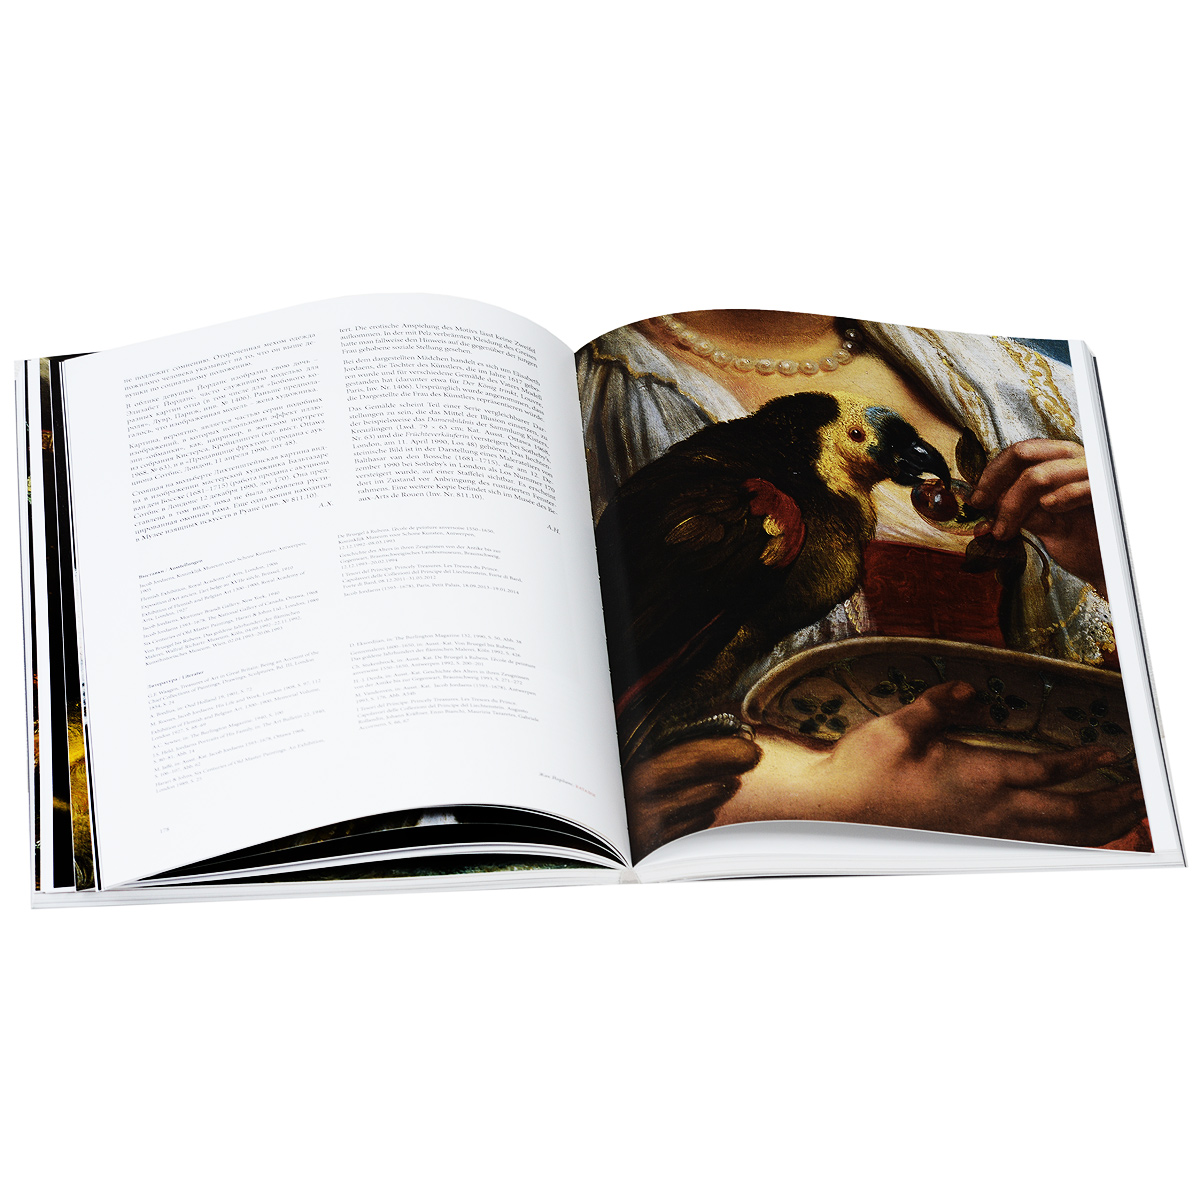 Рубенс, Ван Дейк, Йорданс... Шедевры фламандской живописи из коллекций князя Лихтенштейнского изменяется запасливо накапливая